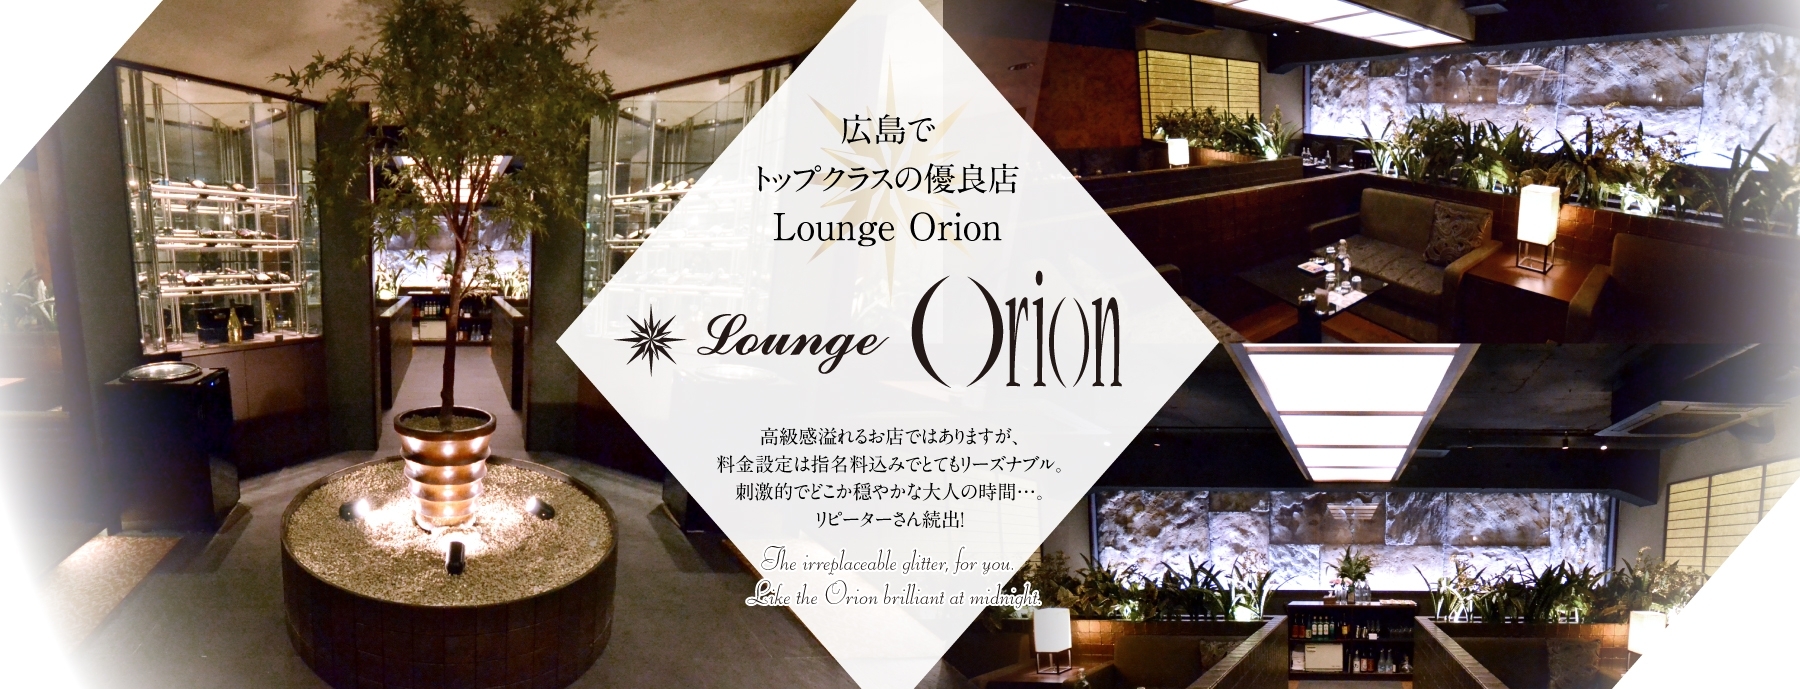 広島・流川・薬研堀 キャバクラ Lounge Orion -オリオン-の店舗画像1